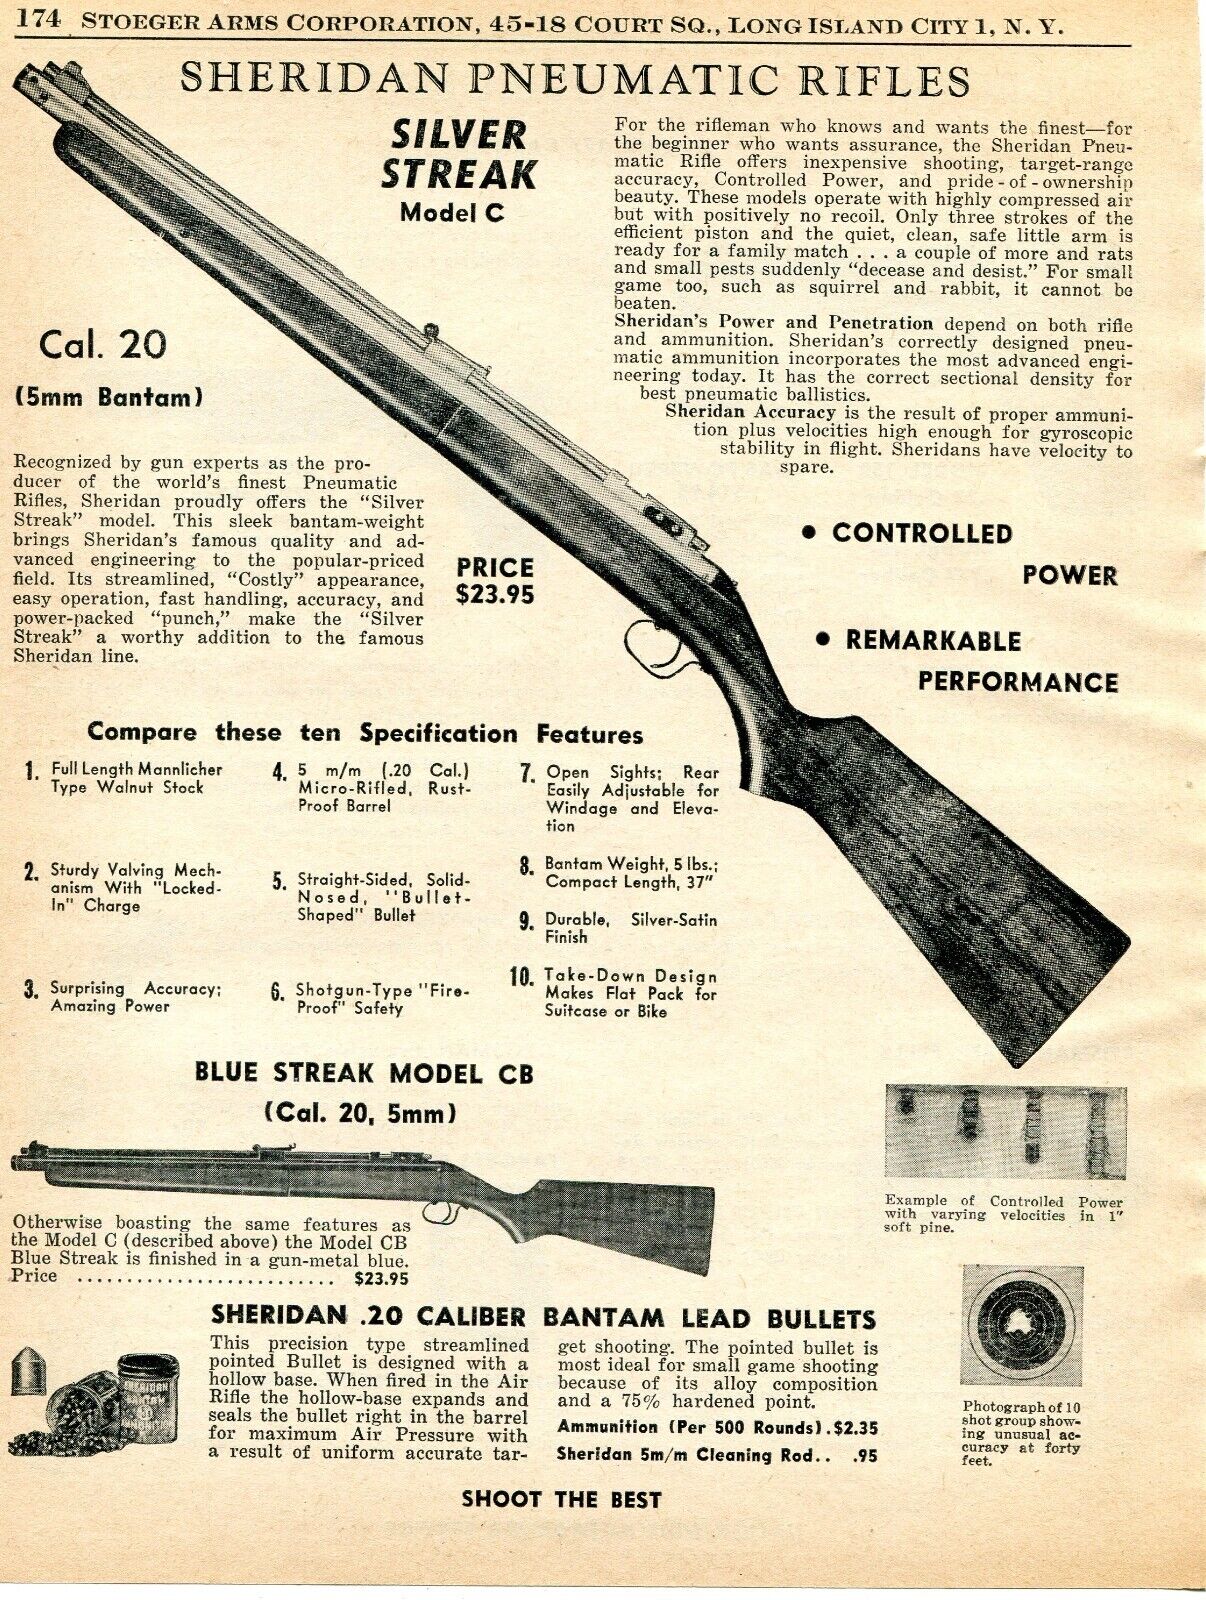 1957 Print Ad of Sheridan Silver Streak C & Blue Streak CB Pneumatic Air Rifle